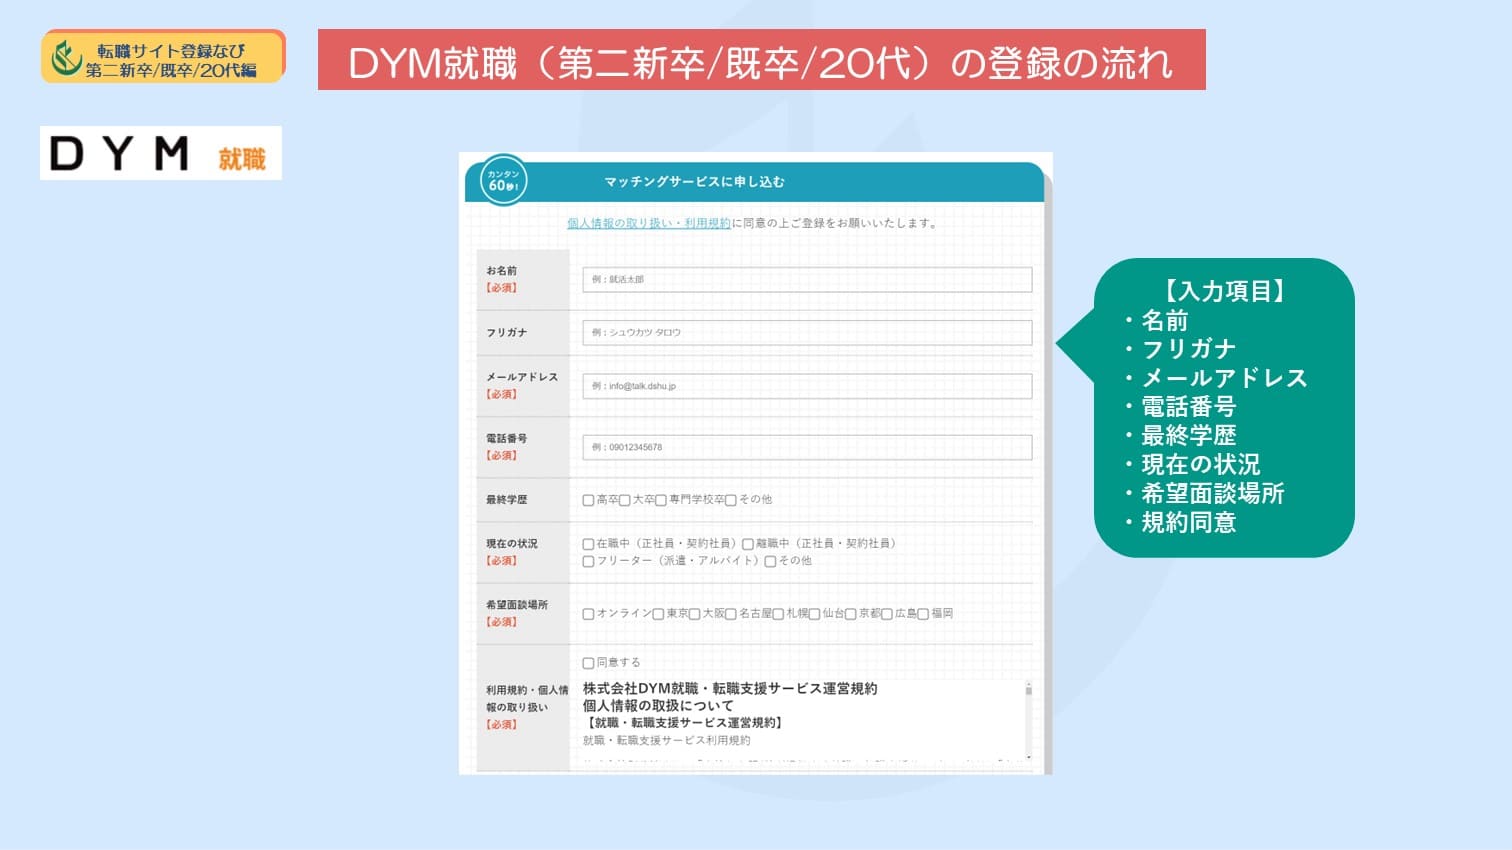 DYM就職の登録方法